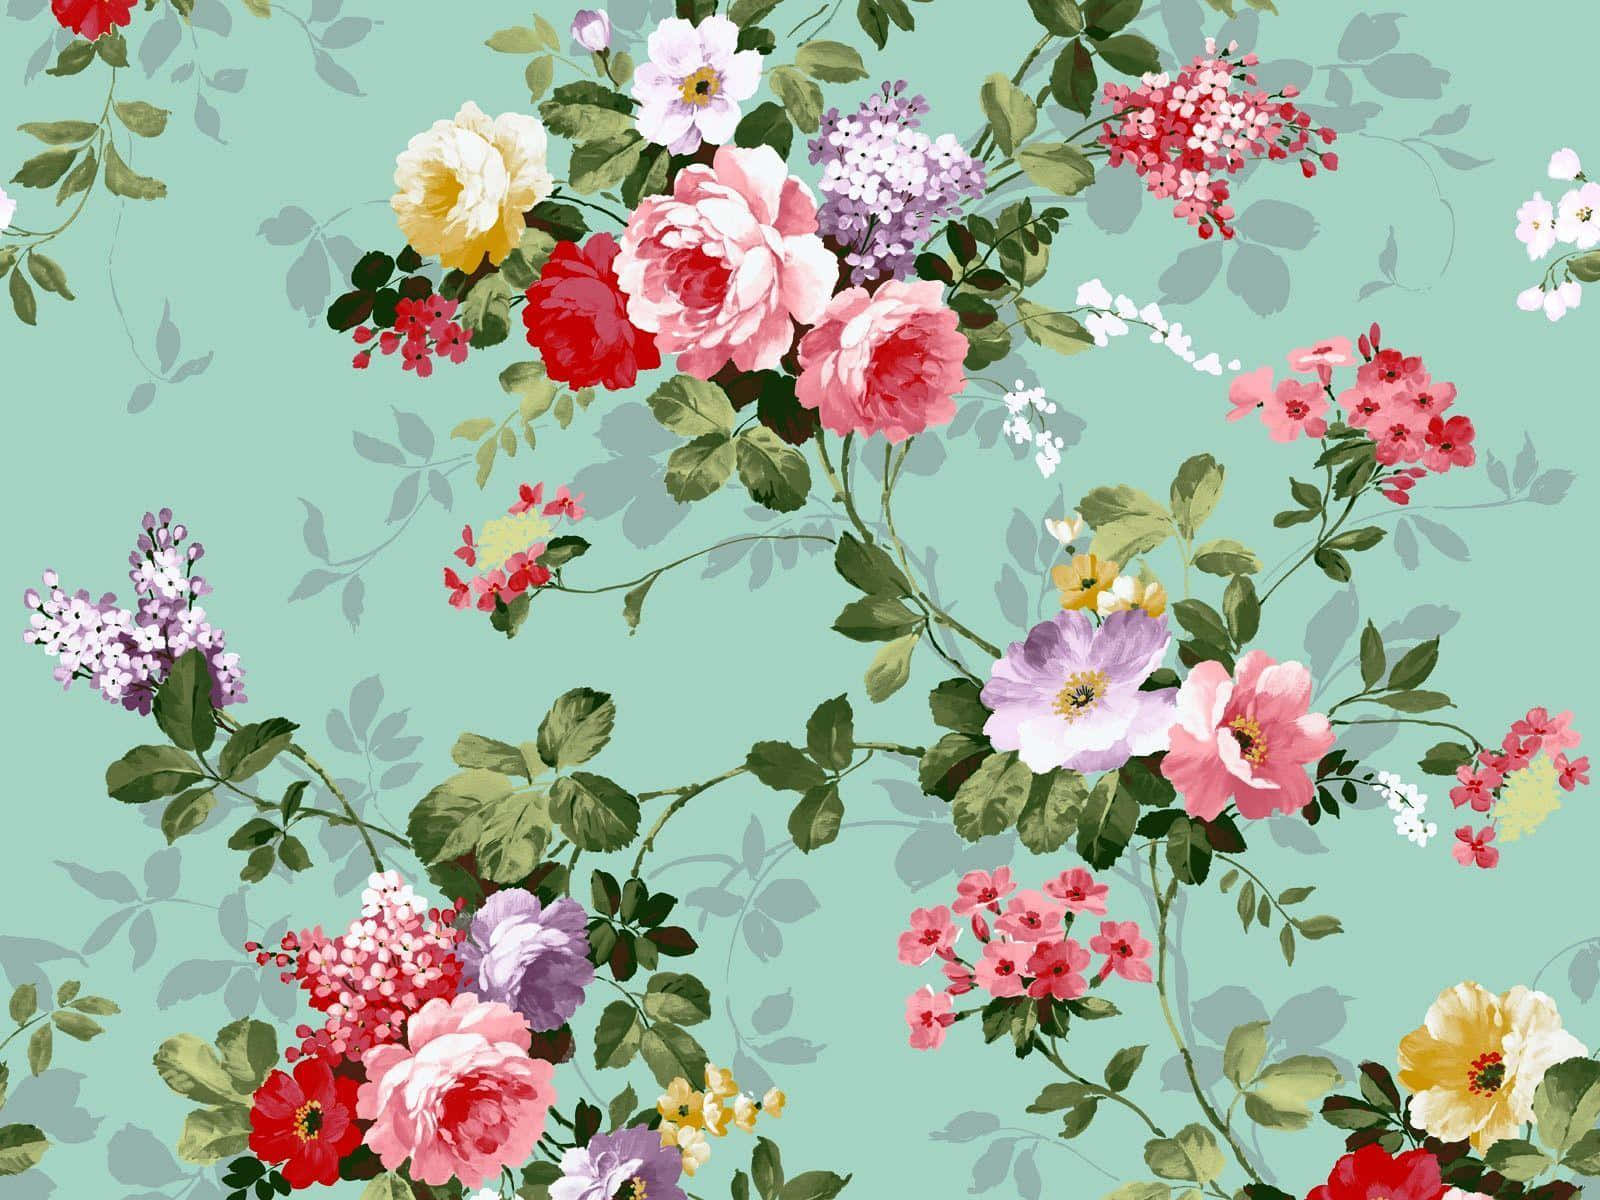 vintage floral background pattern tumblr